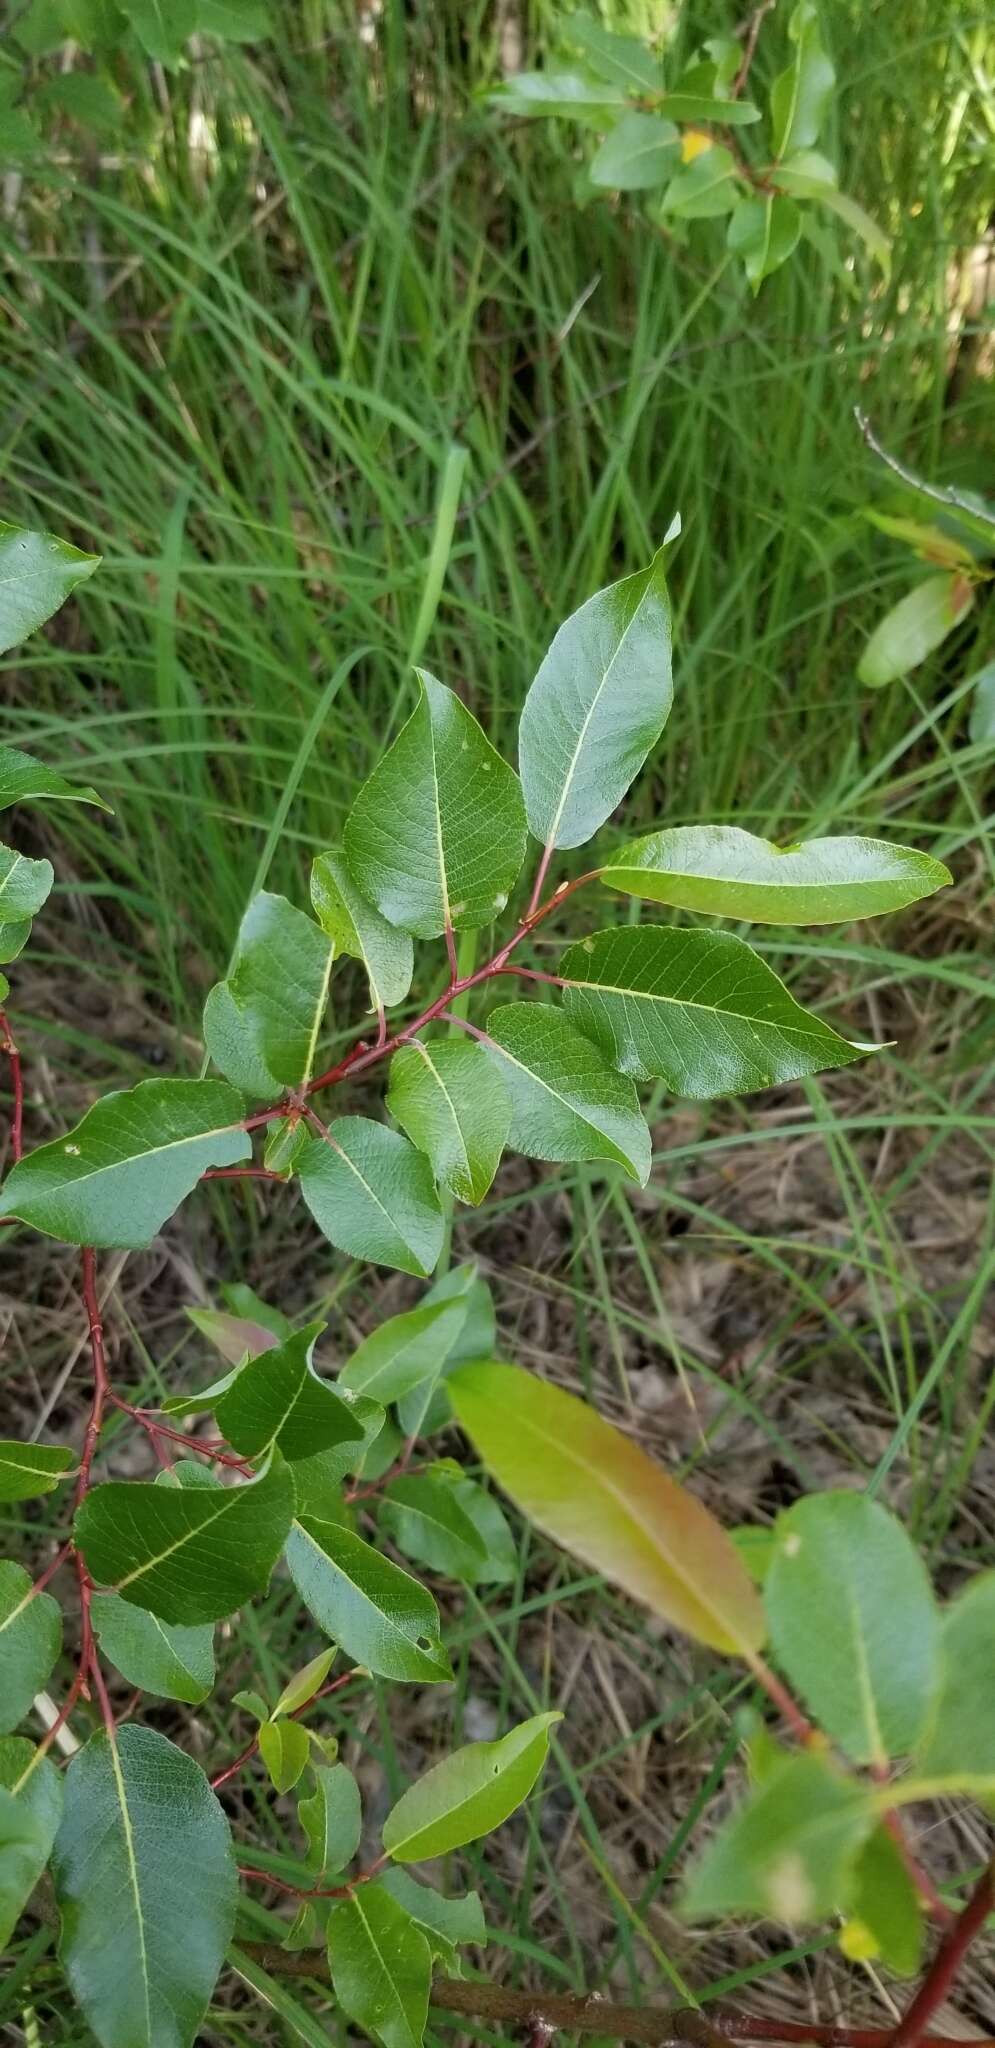 Image de Salix pyrifolia Anderss.